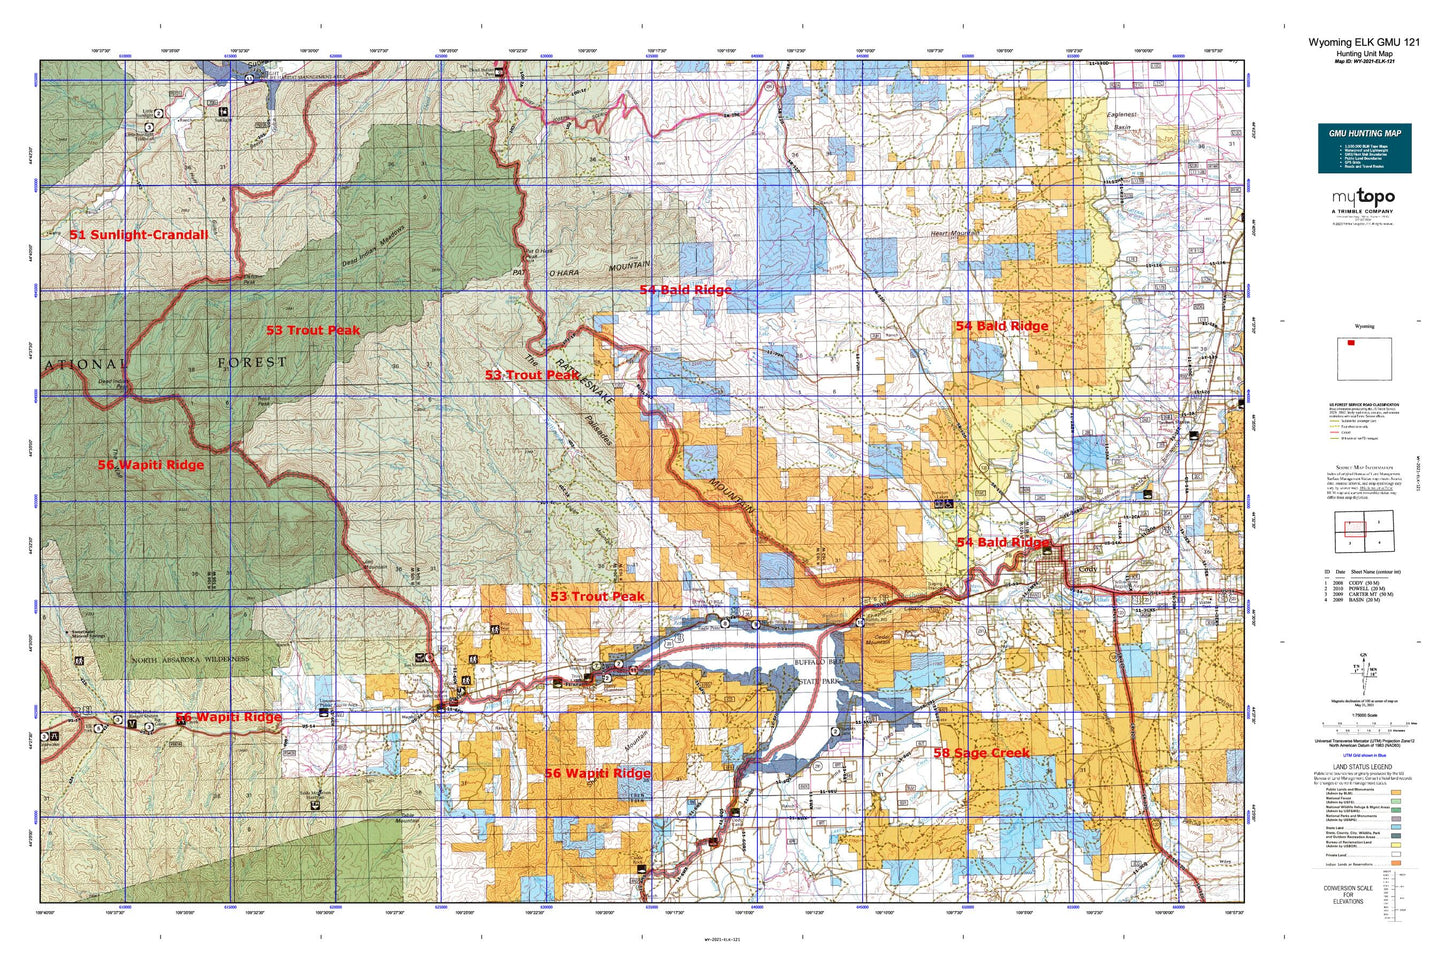 Wyoming Elk GMU 121 Map Image